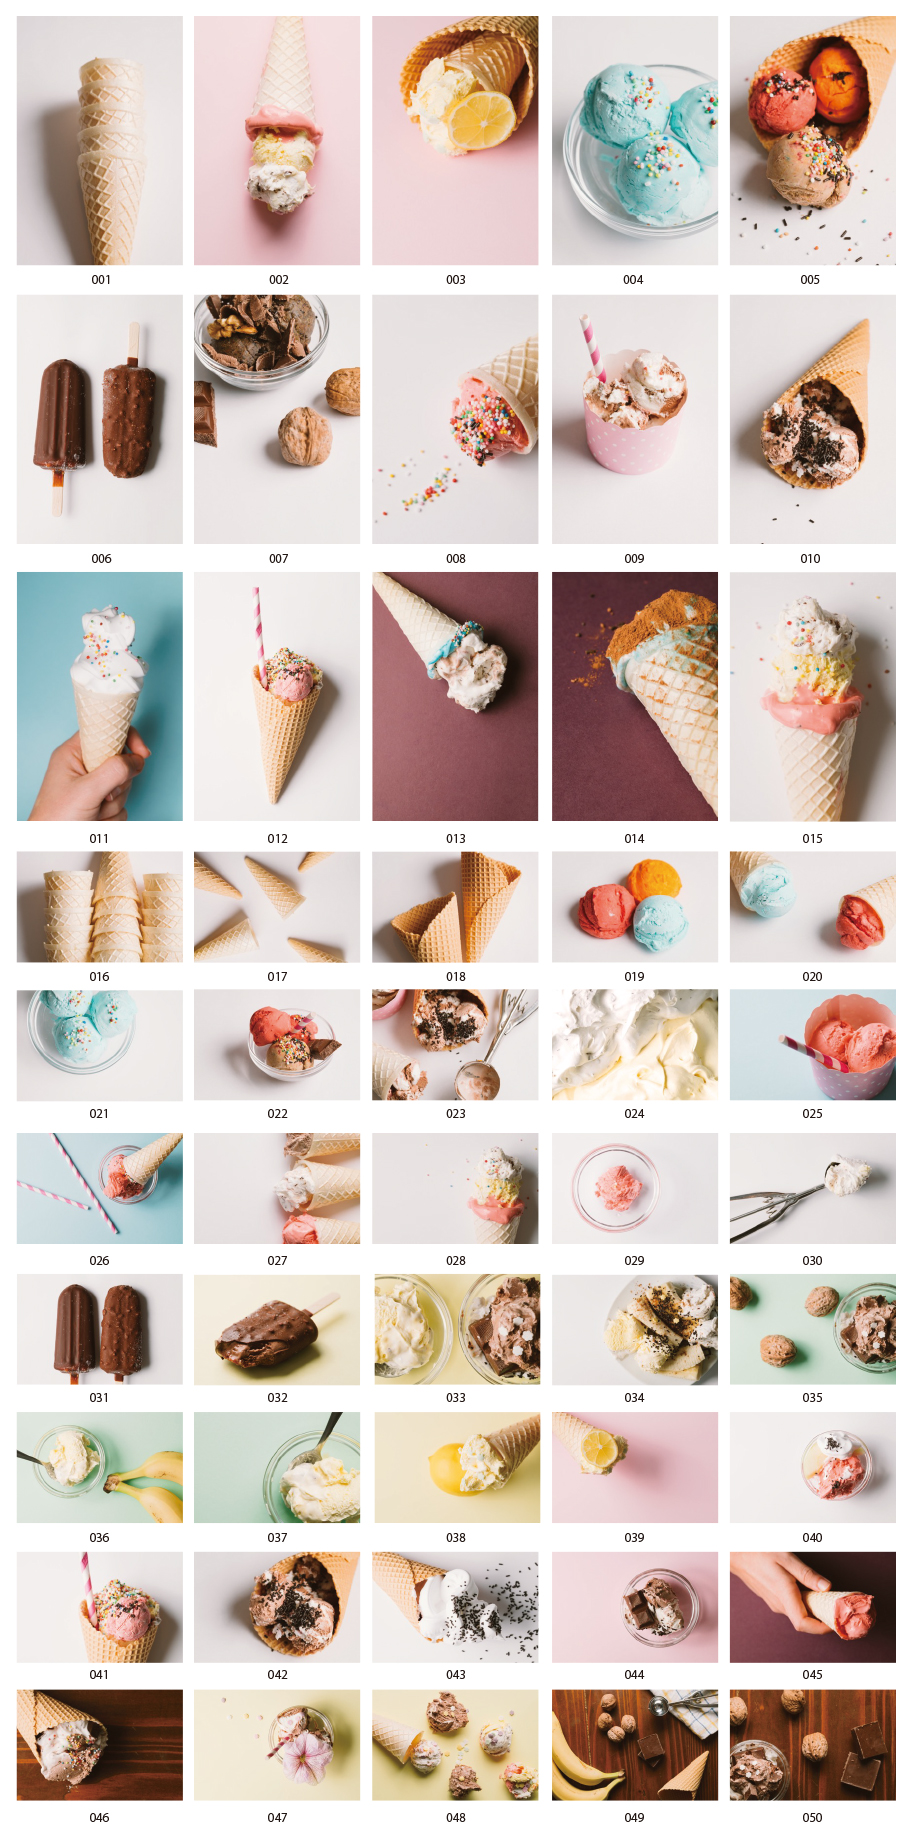 アイスクリームの写真素材